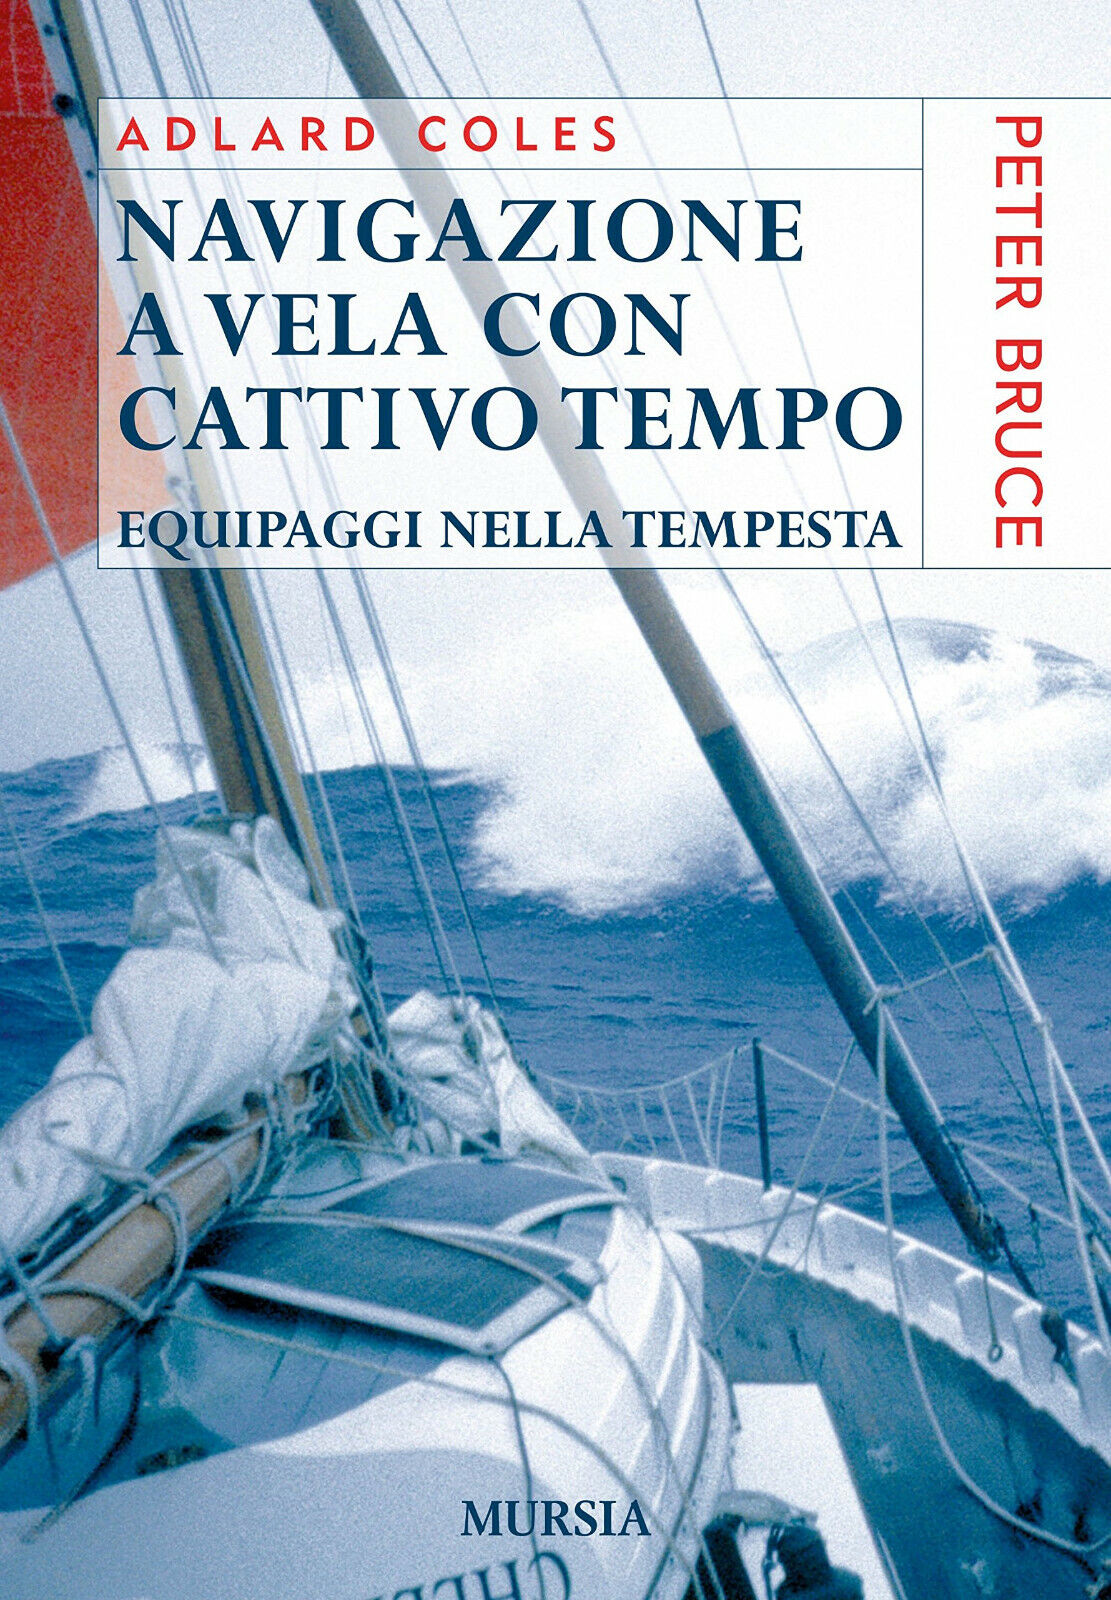 Navigazione a vela con cattivo tempo - Adlard Coles - Ugo Mursia, 2016 libro usato